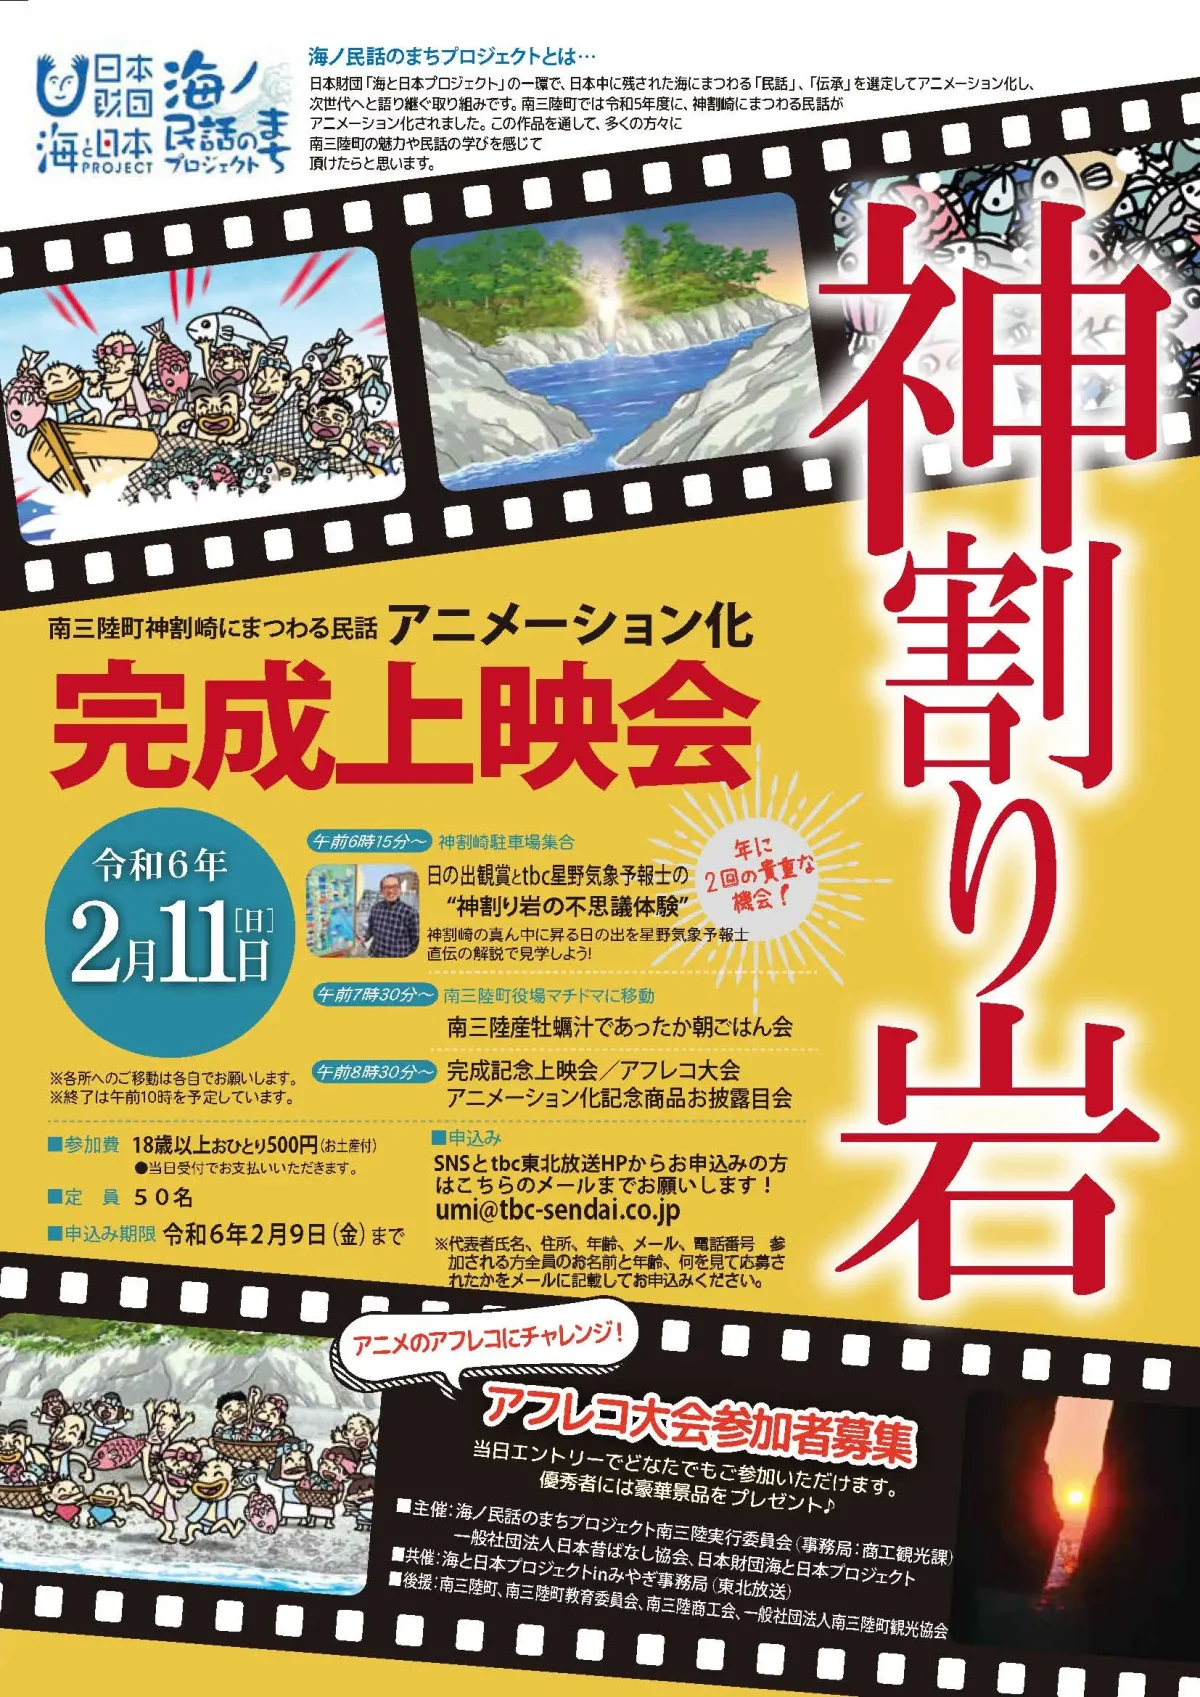 参加者募集中！2月11日(日)海ノ民話のまちプロジェクト 南三陸町「神割り岩」アニメーション上映会を開催！